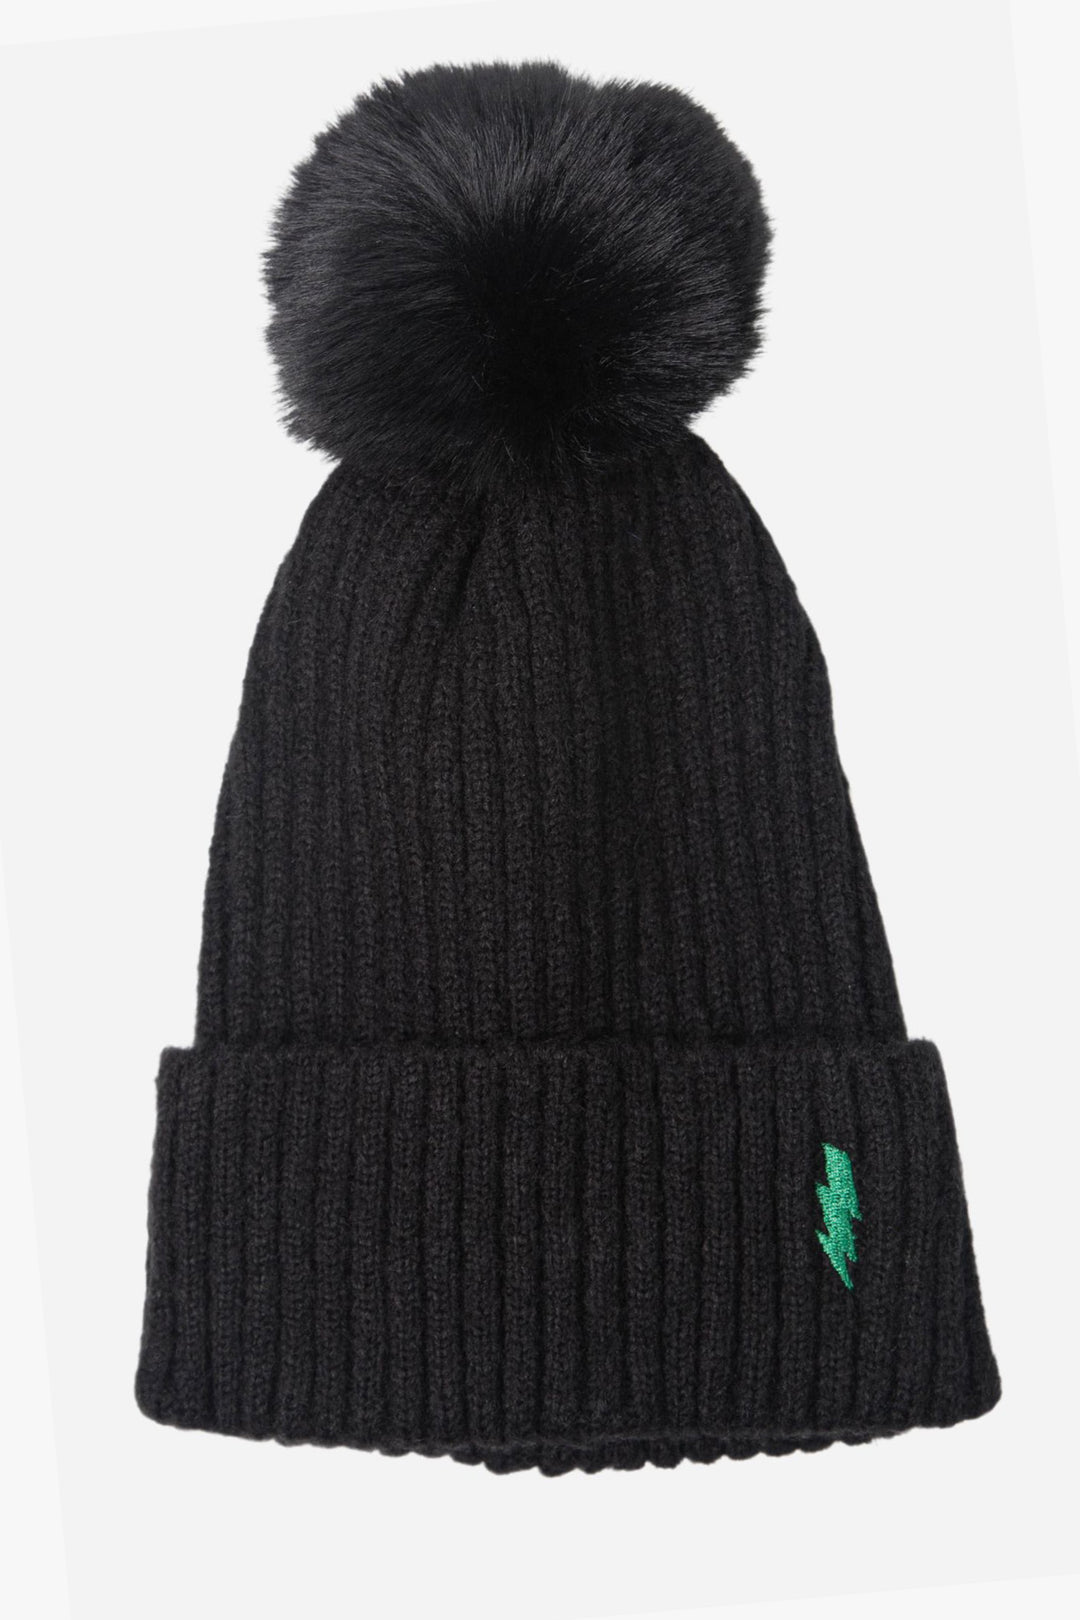 Black Green Lightning Bolt Embroidered Hat